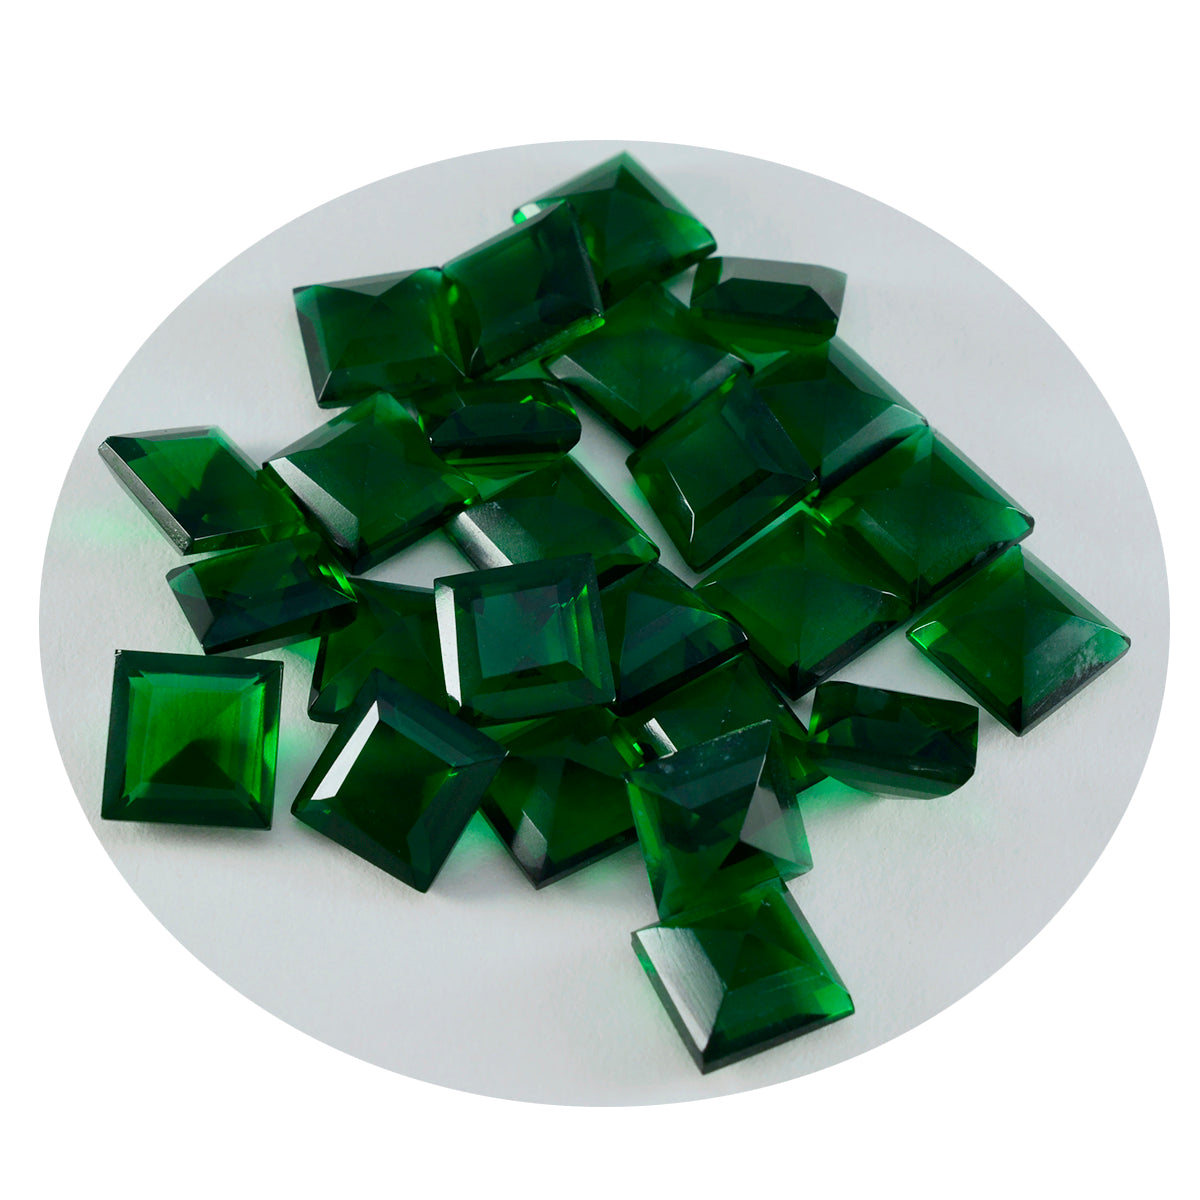 Riyogems 1 pieza verde esmeralda CZ facetada 10x10 mm forma cuadrada preciosa piedra preciosa de calidad